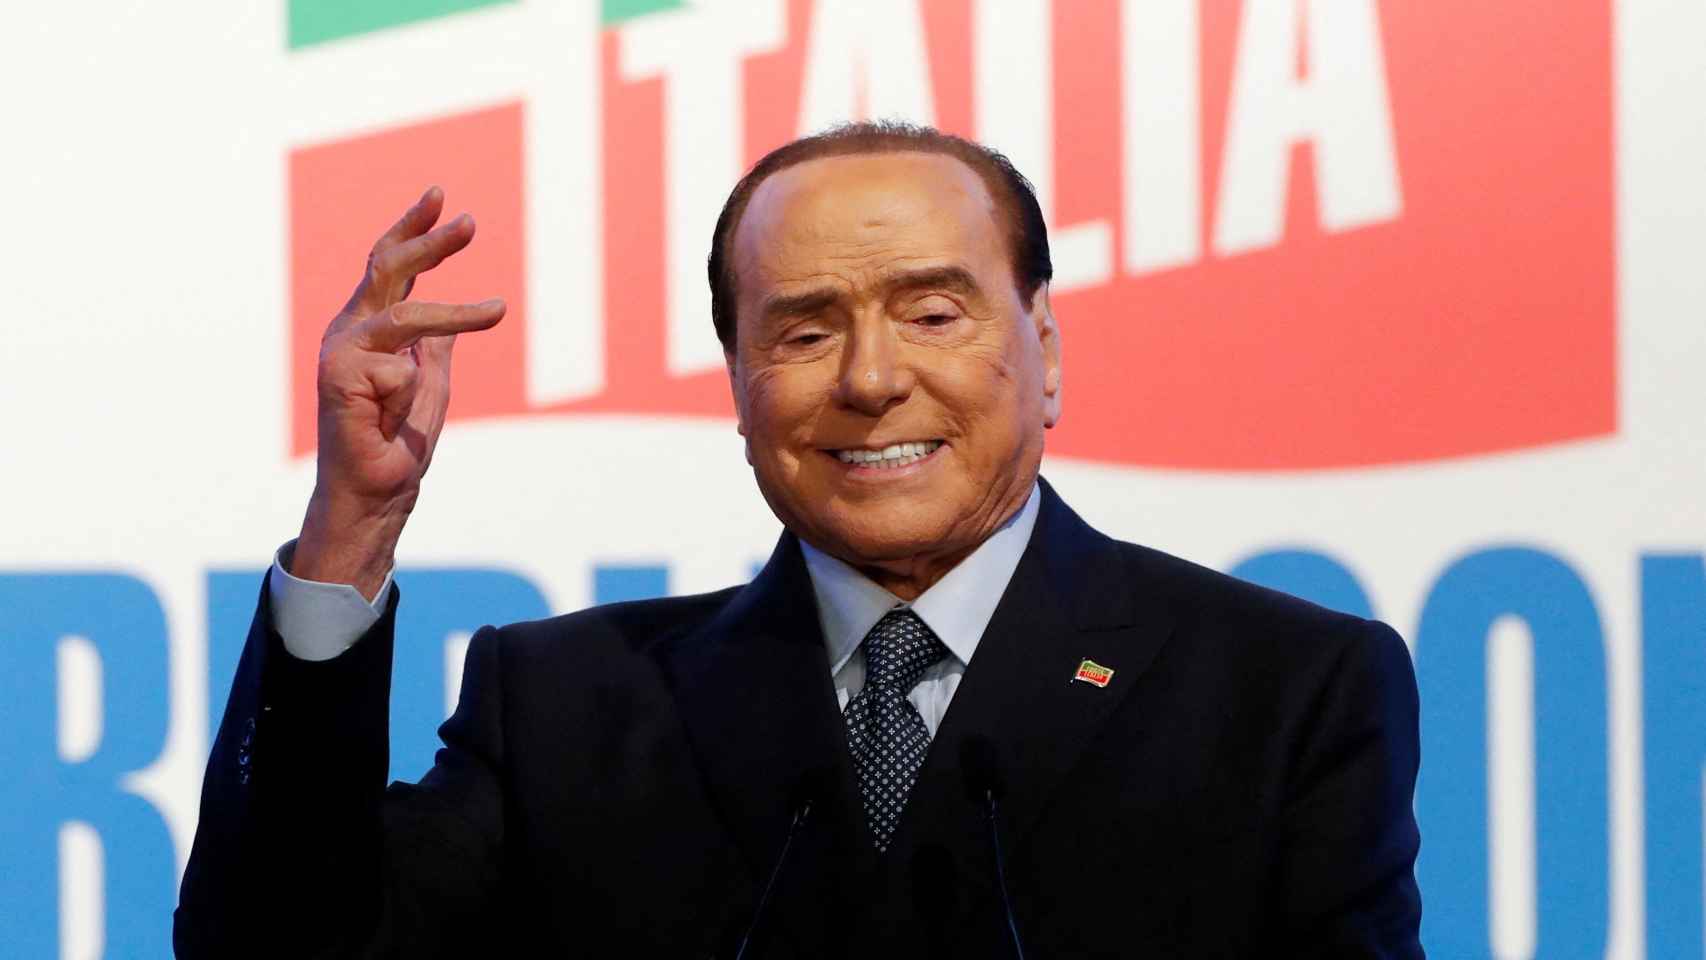 El ex primer ministro italiano Silvio Berlusconi en una imagen de archivo.